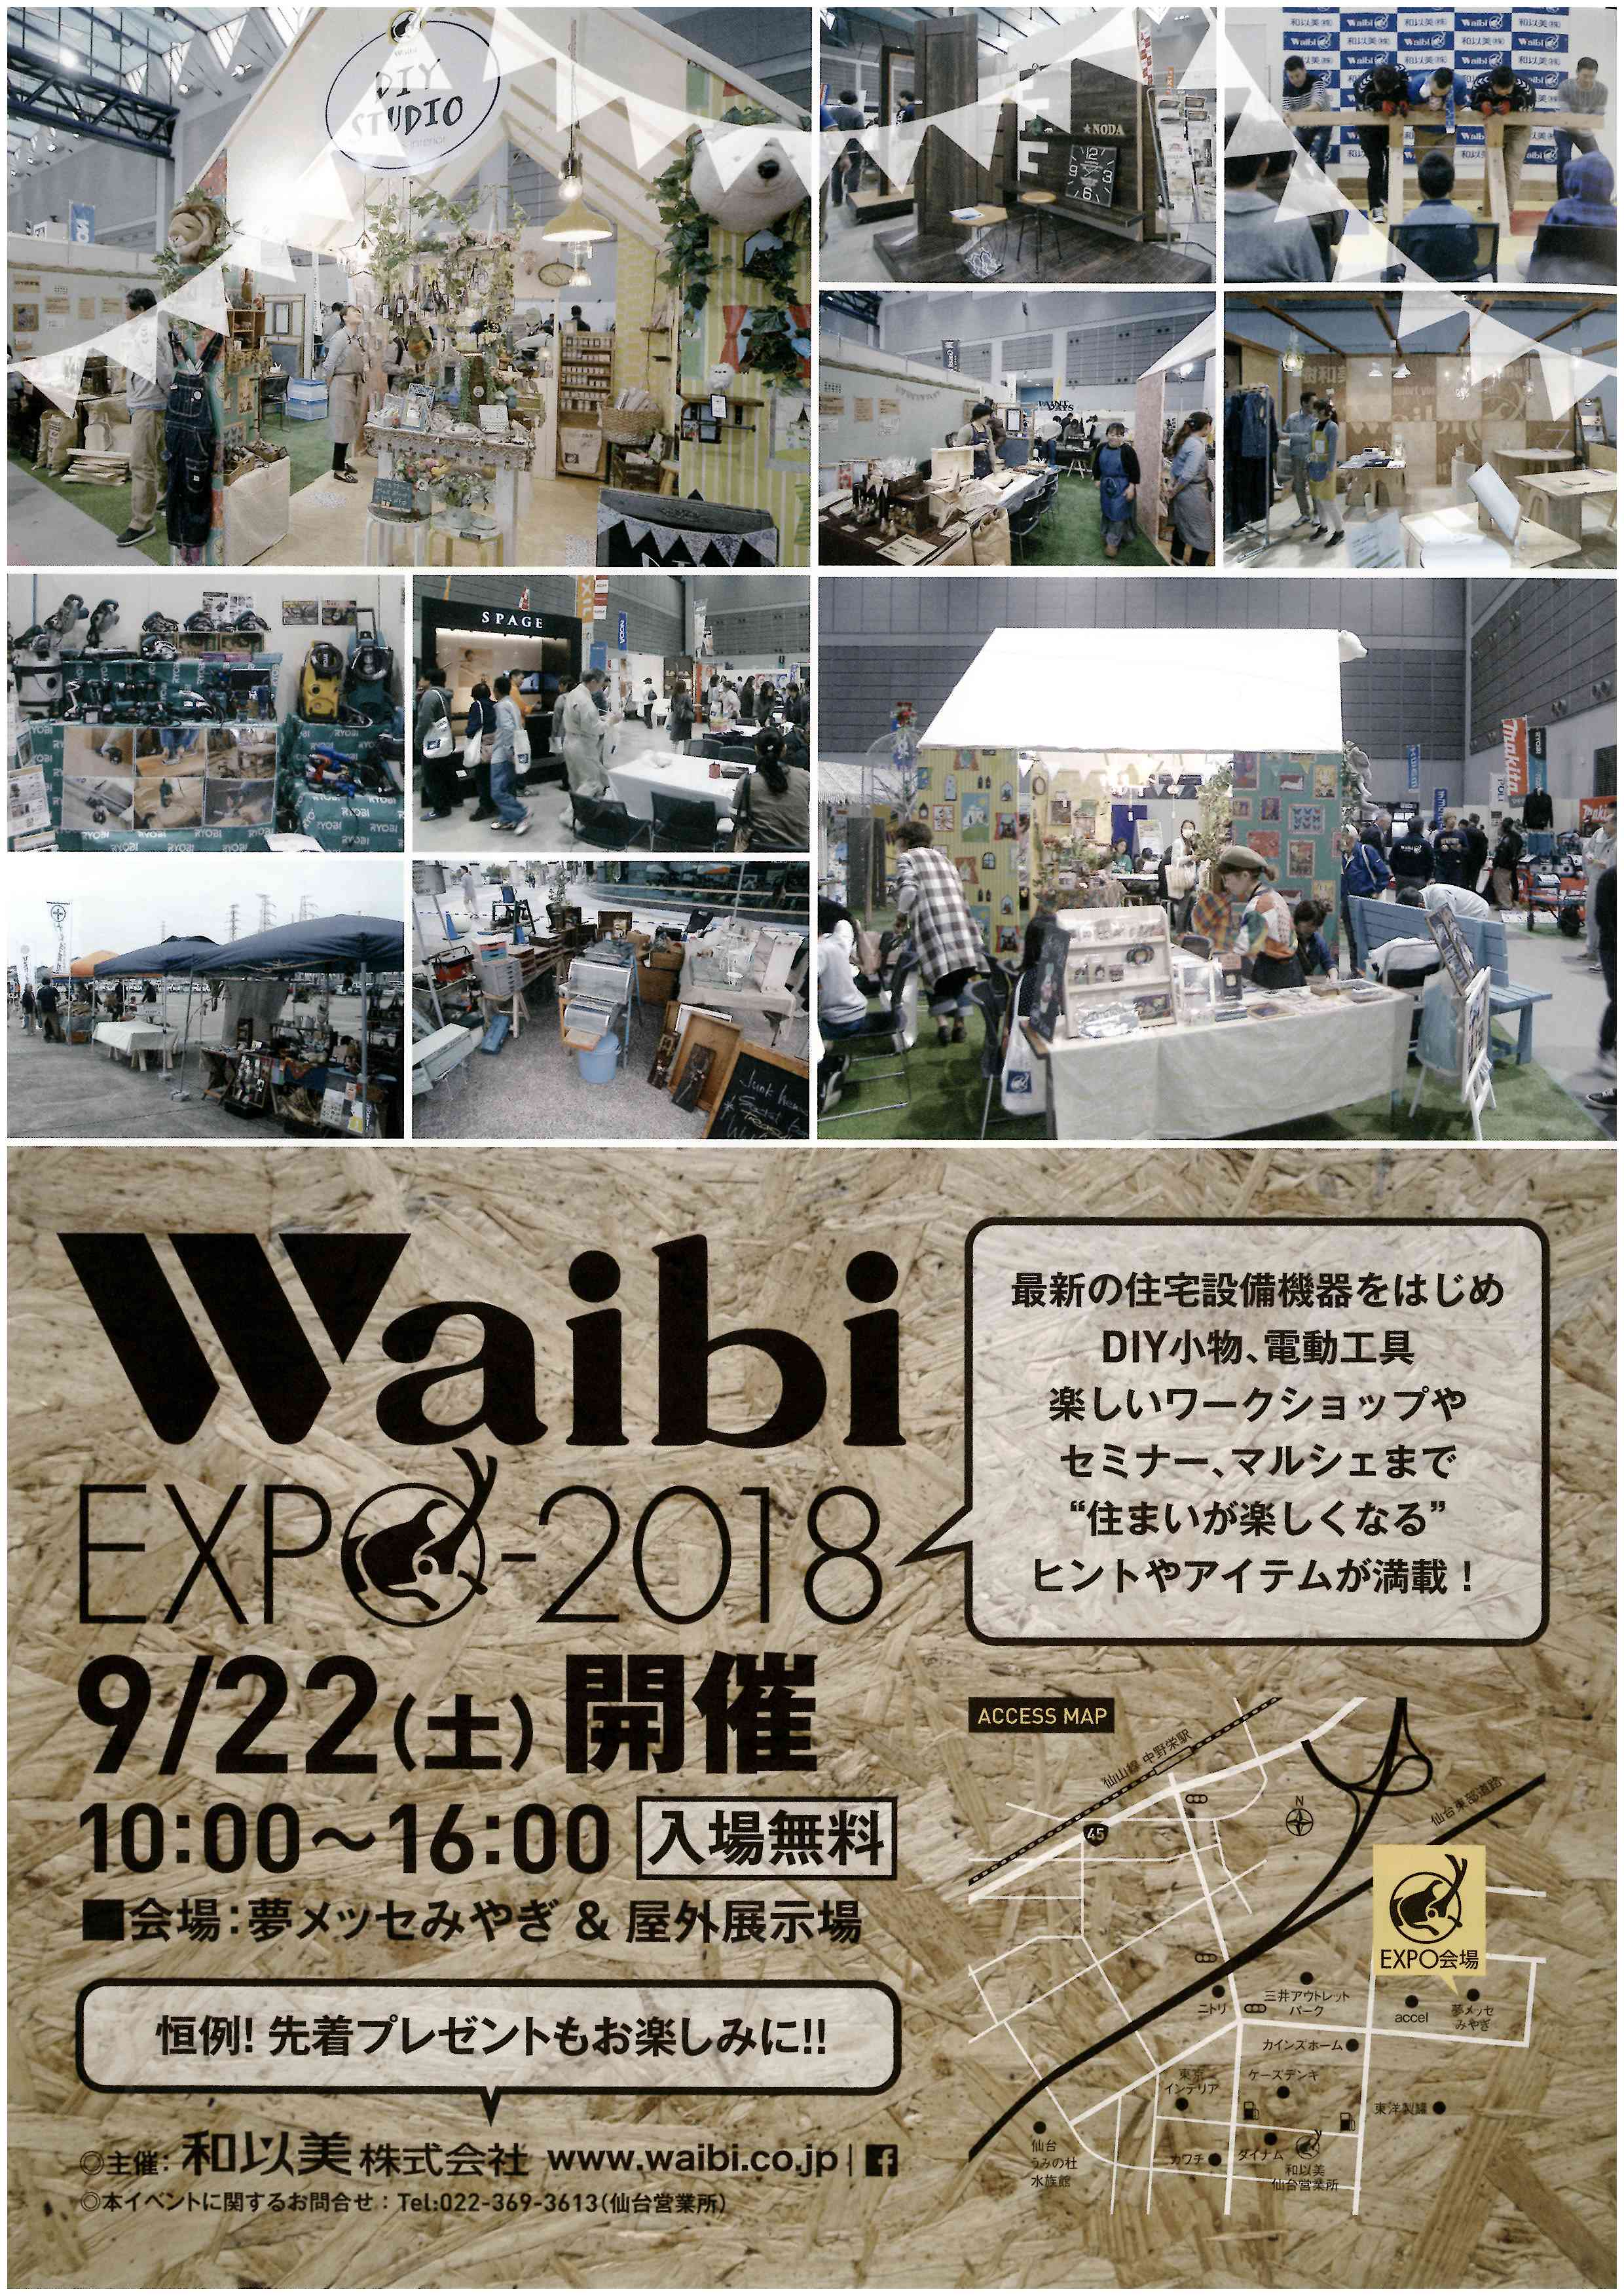 Waibi Expo 18